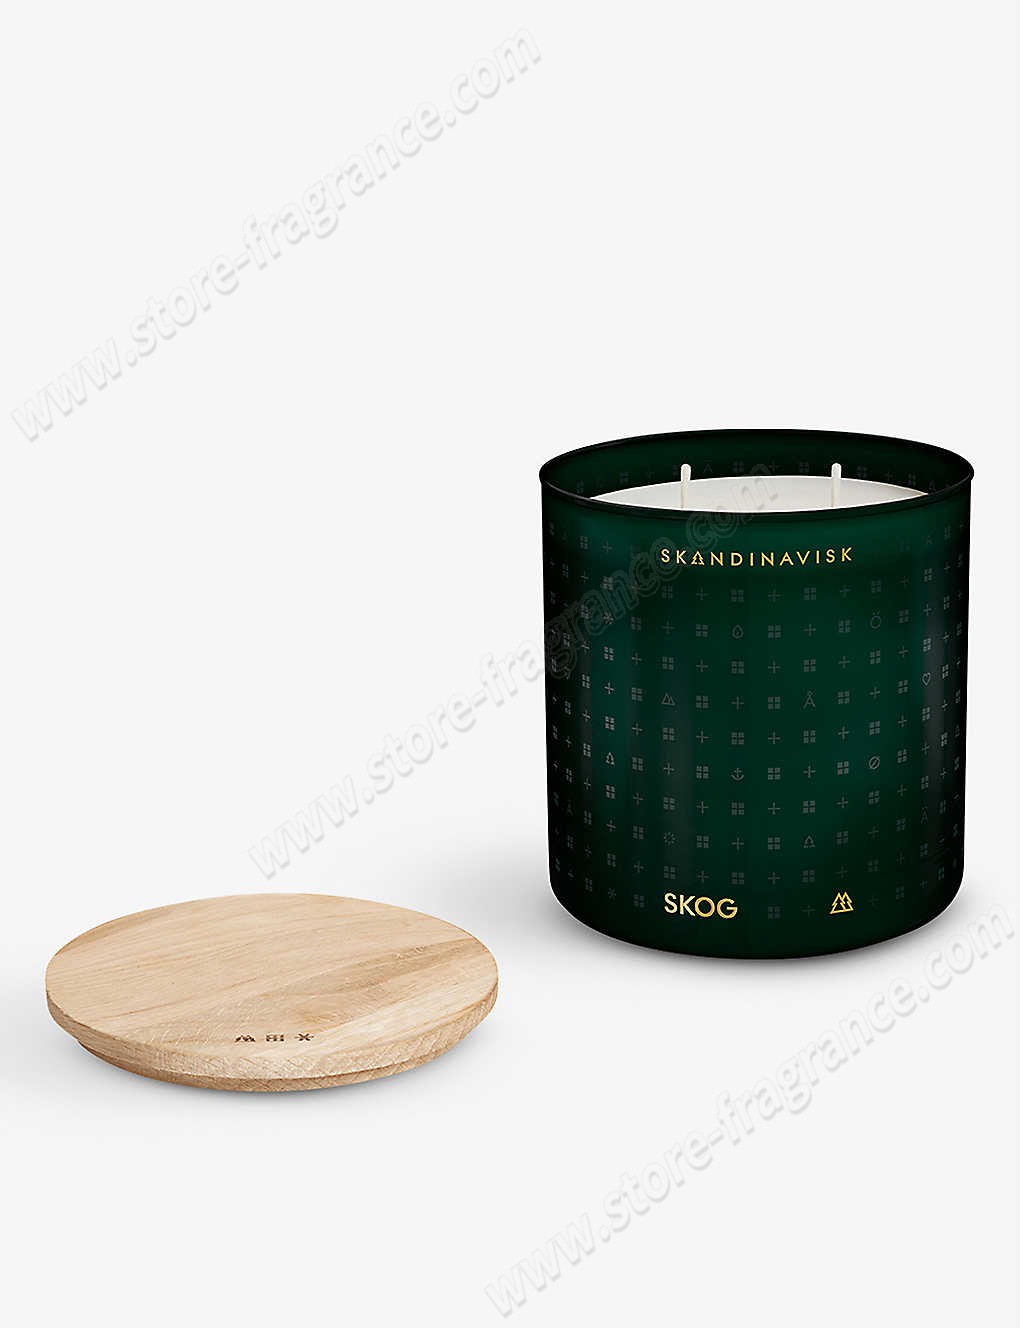 SKANDINAVISK/SKOG scented candle with lid 400g ✿ Discount Store - SKANDINAVISK/SKOG scented candle with lid 400g ✿ Discount Store